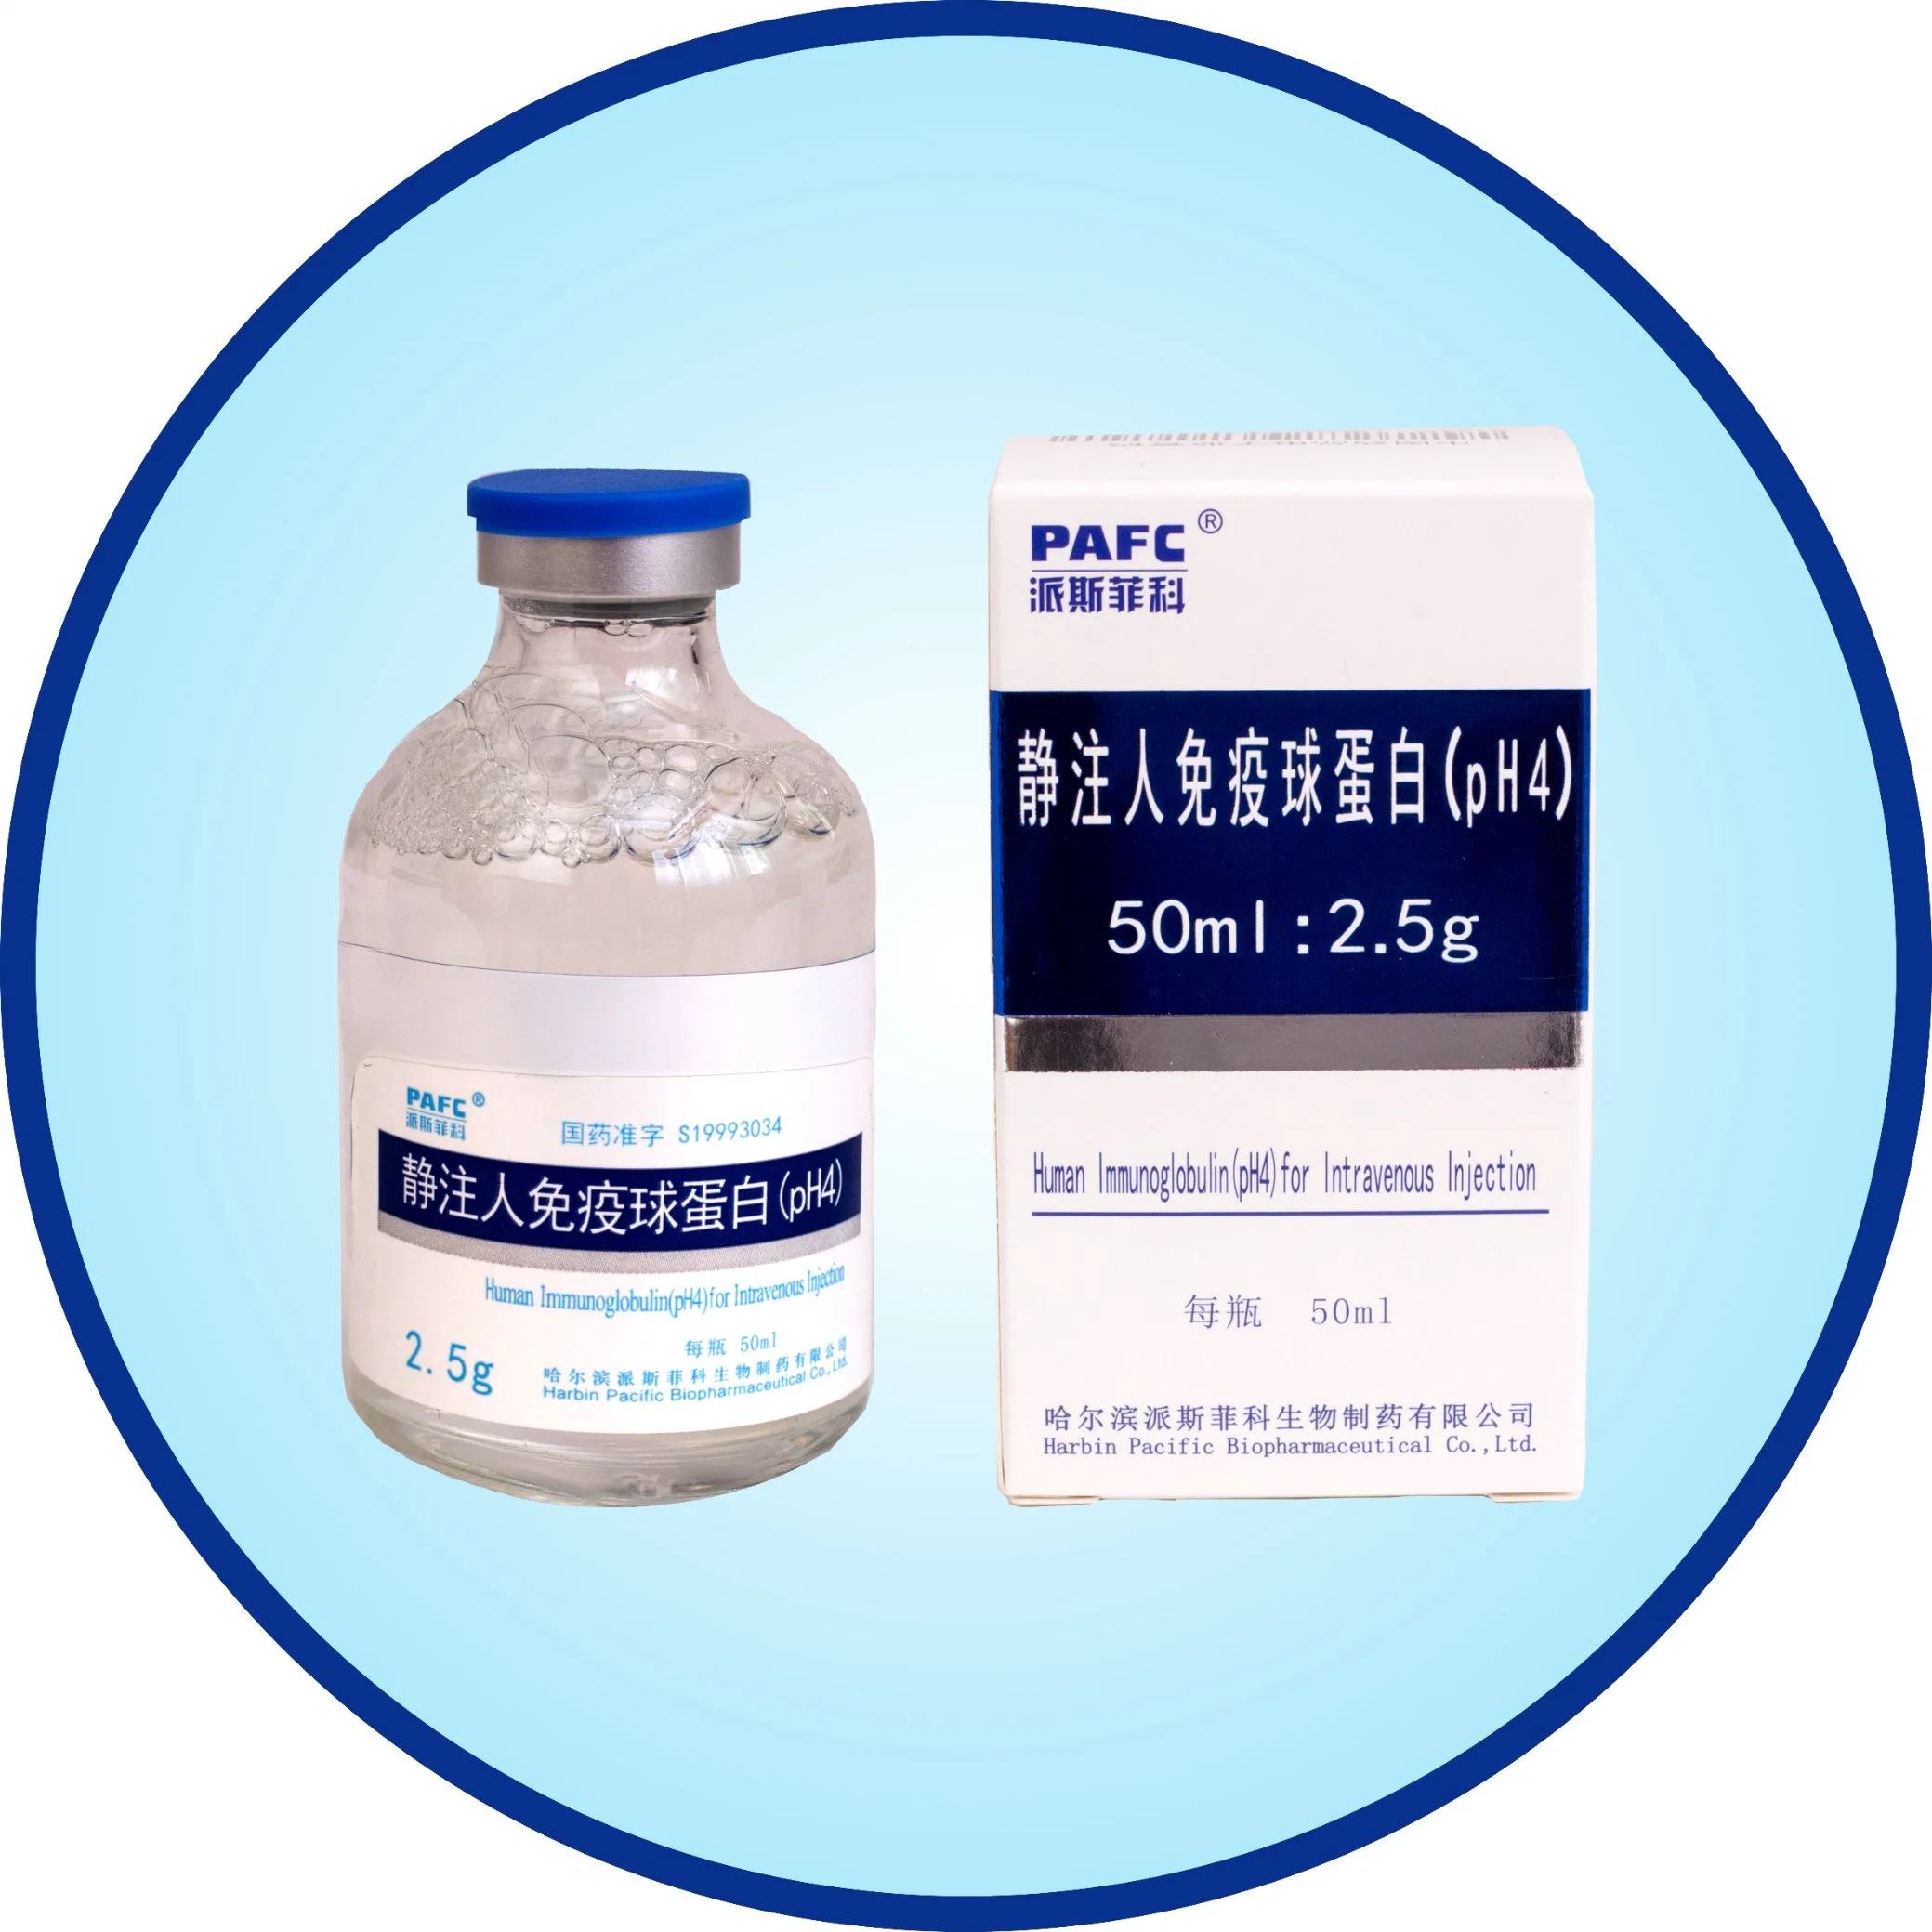 La Inmunoglobulina Humana purificada de alta (pH4) para la inyección intravenosa de inmunoglobulina intravenosa